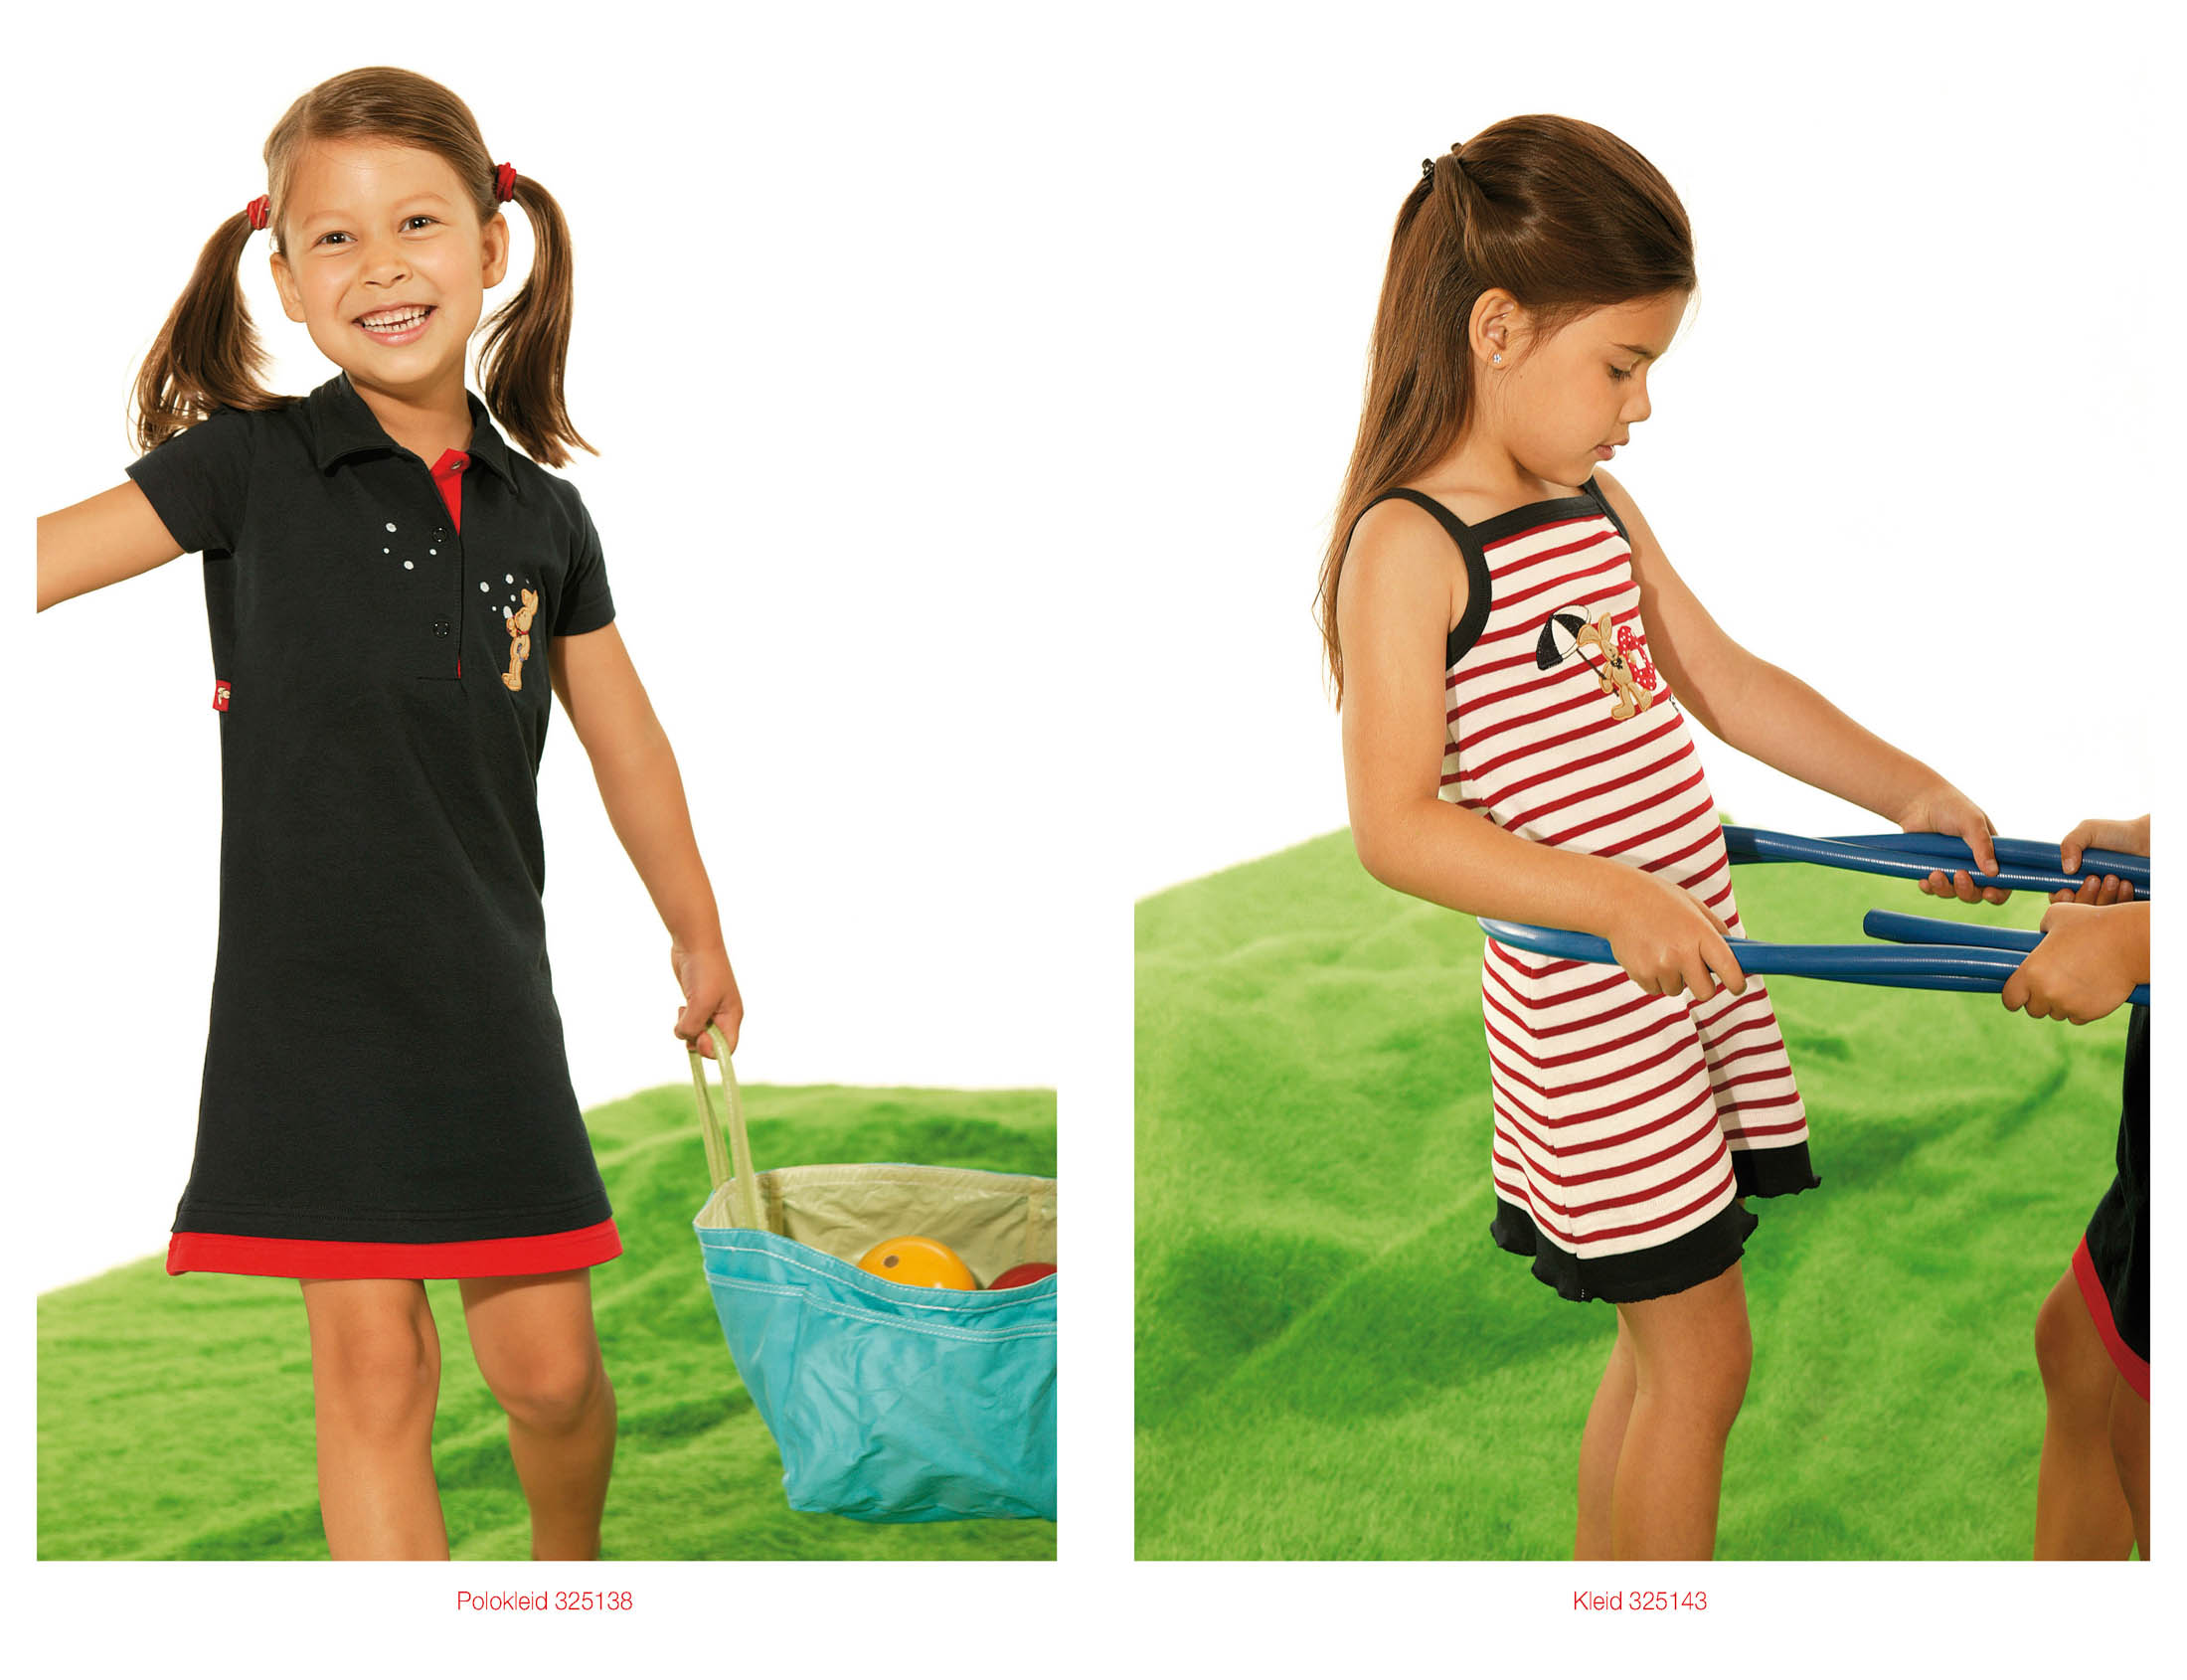 Zwei Bilder von spielenden jungen Mädchen. Links lächelt ein Mädchen und hält ein blaues Spielzeug mit einem Korb voller Bälle hinter sich. Rechts spielt ein Mädchen in einem gestreiften Kleid aufmerksam mit einem blauen Spielzeug, das ein anderes Kind hält. © Fotografie Tomas Rodriguez